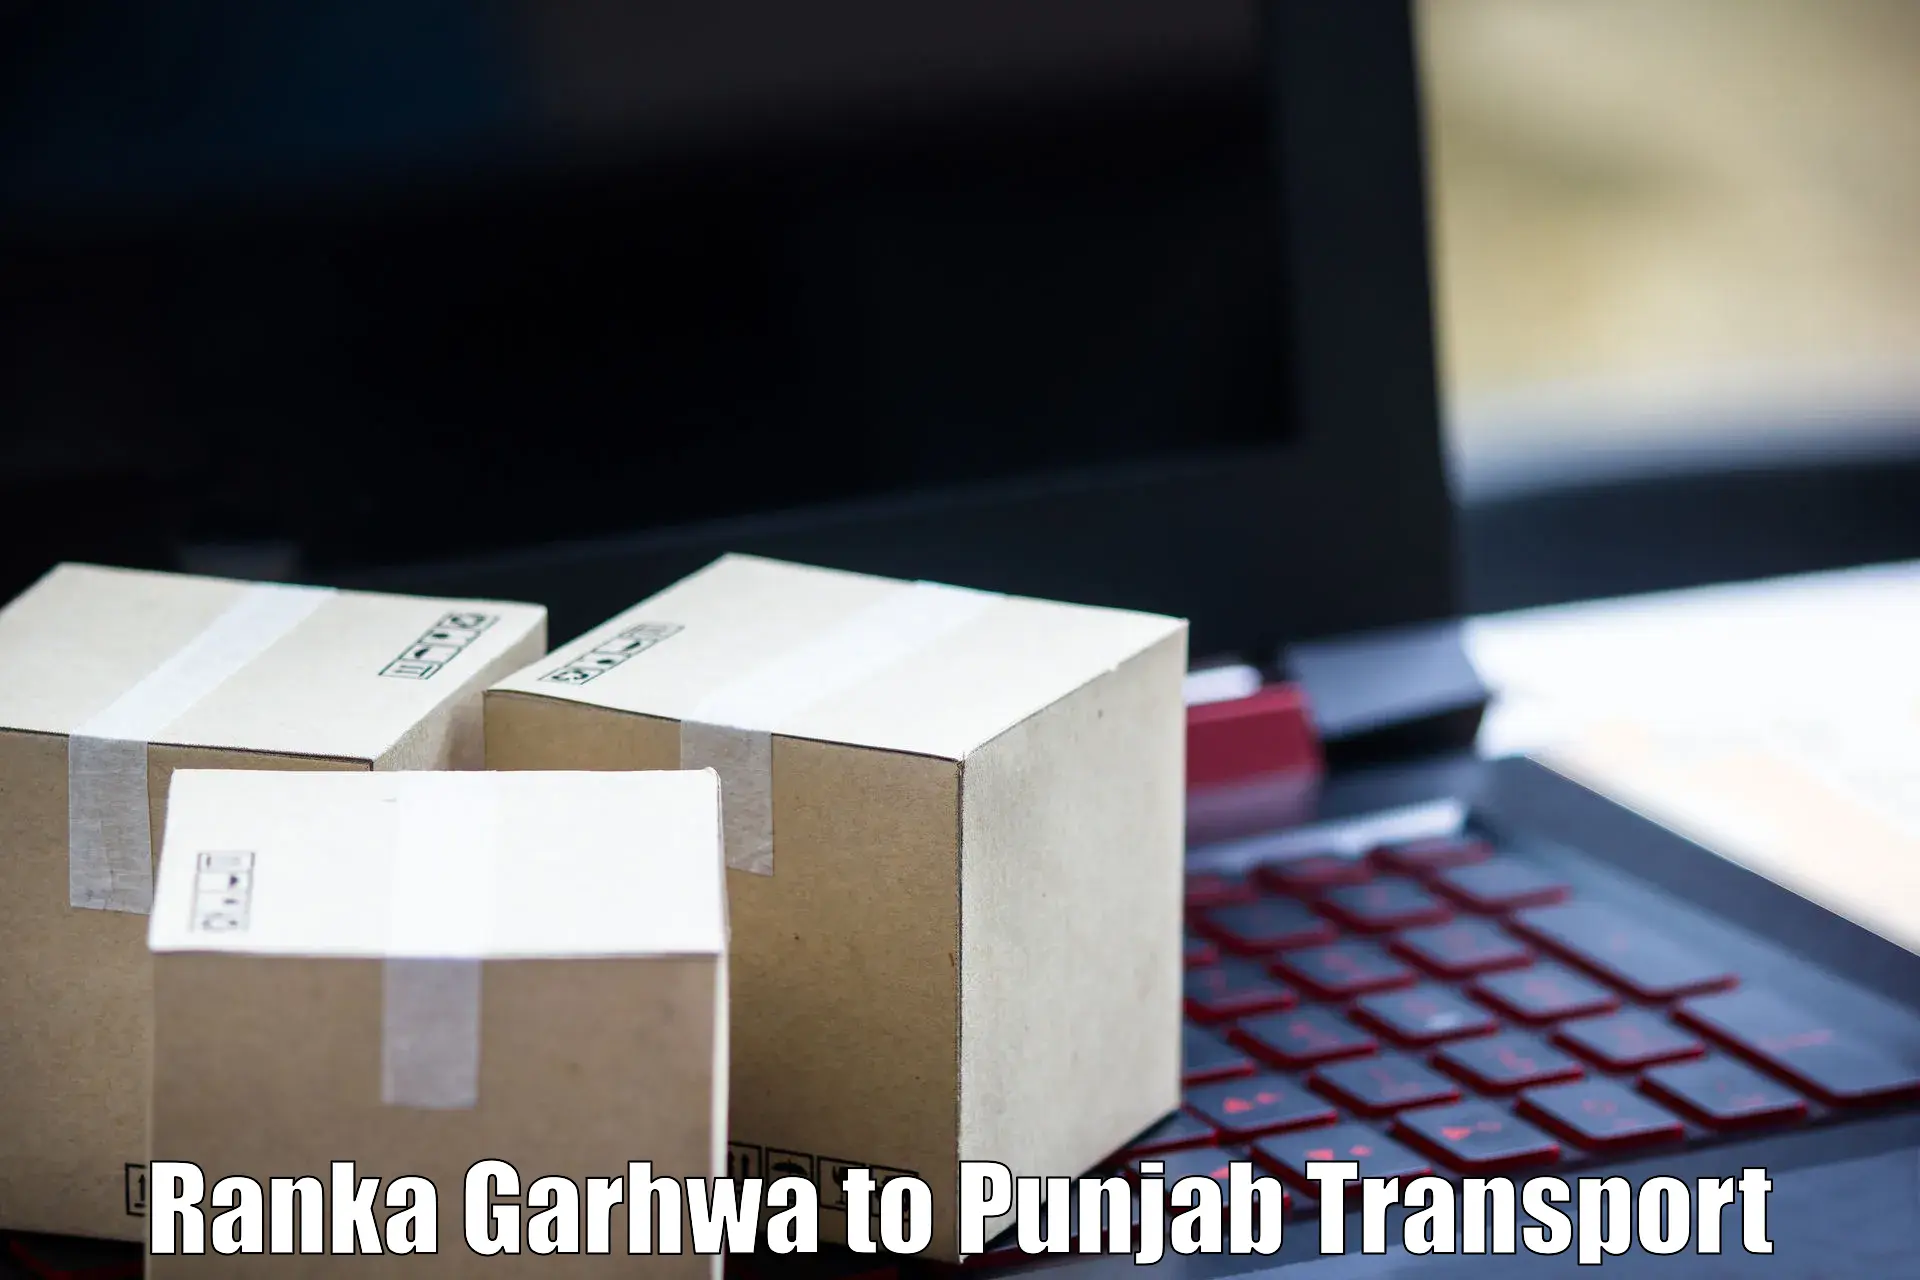 Transport in sharing Ranka Garhwa to Punjab